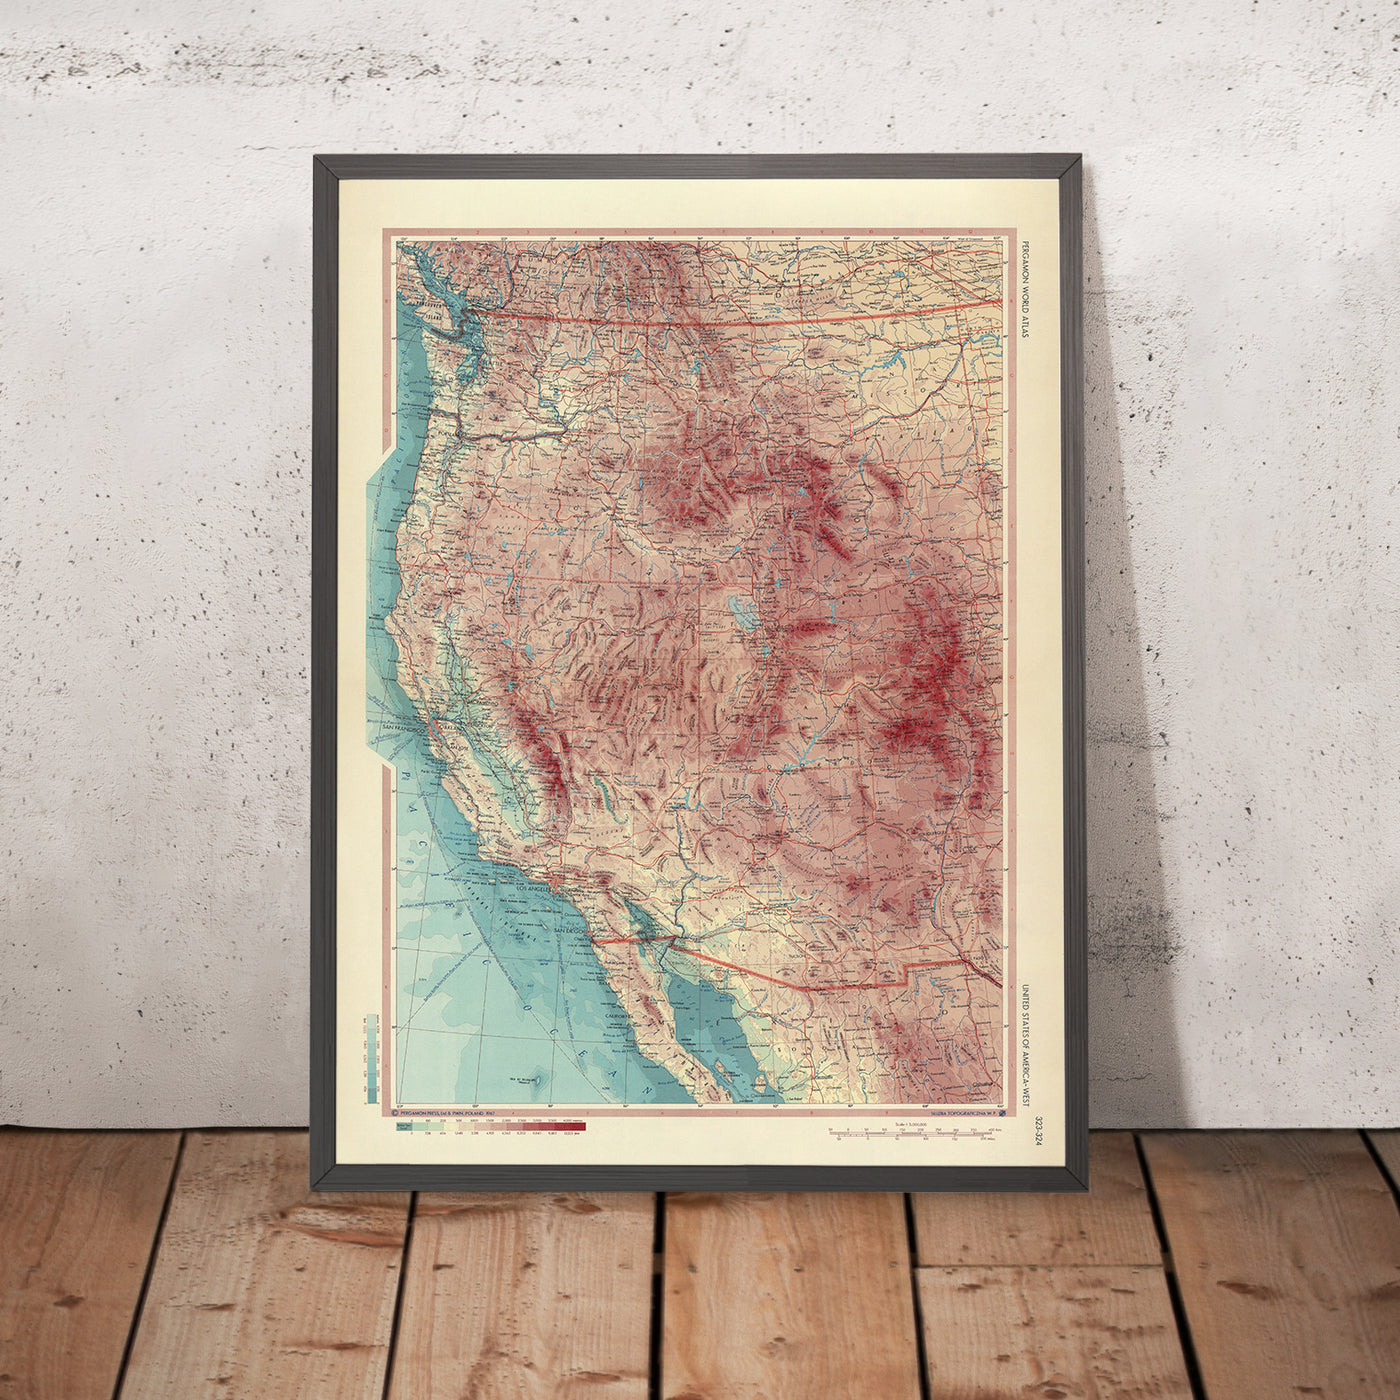 Mapa antiguo del oeste de Estados Unidos, 1967: Los Ángeles, San Francisco, Yosemite, Gran Cañón, Montañas Rocosas